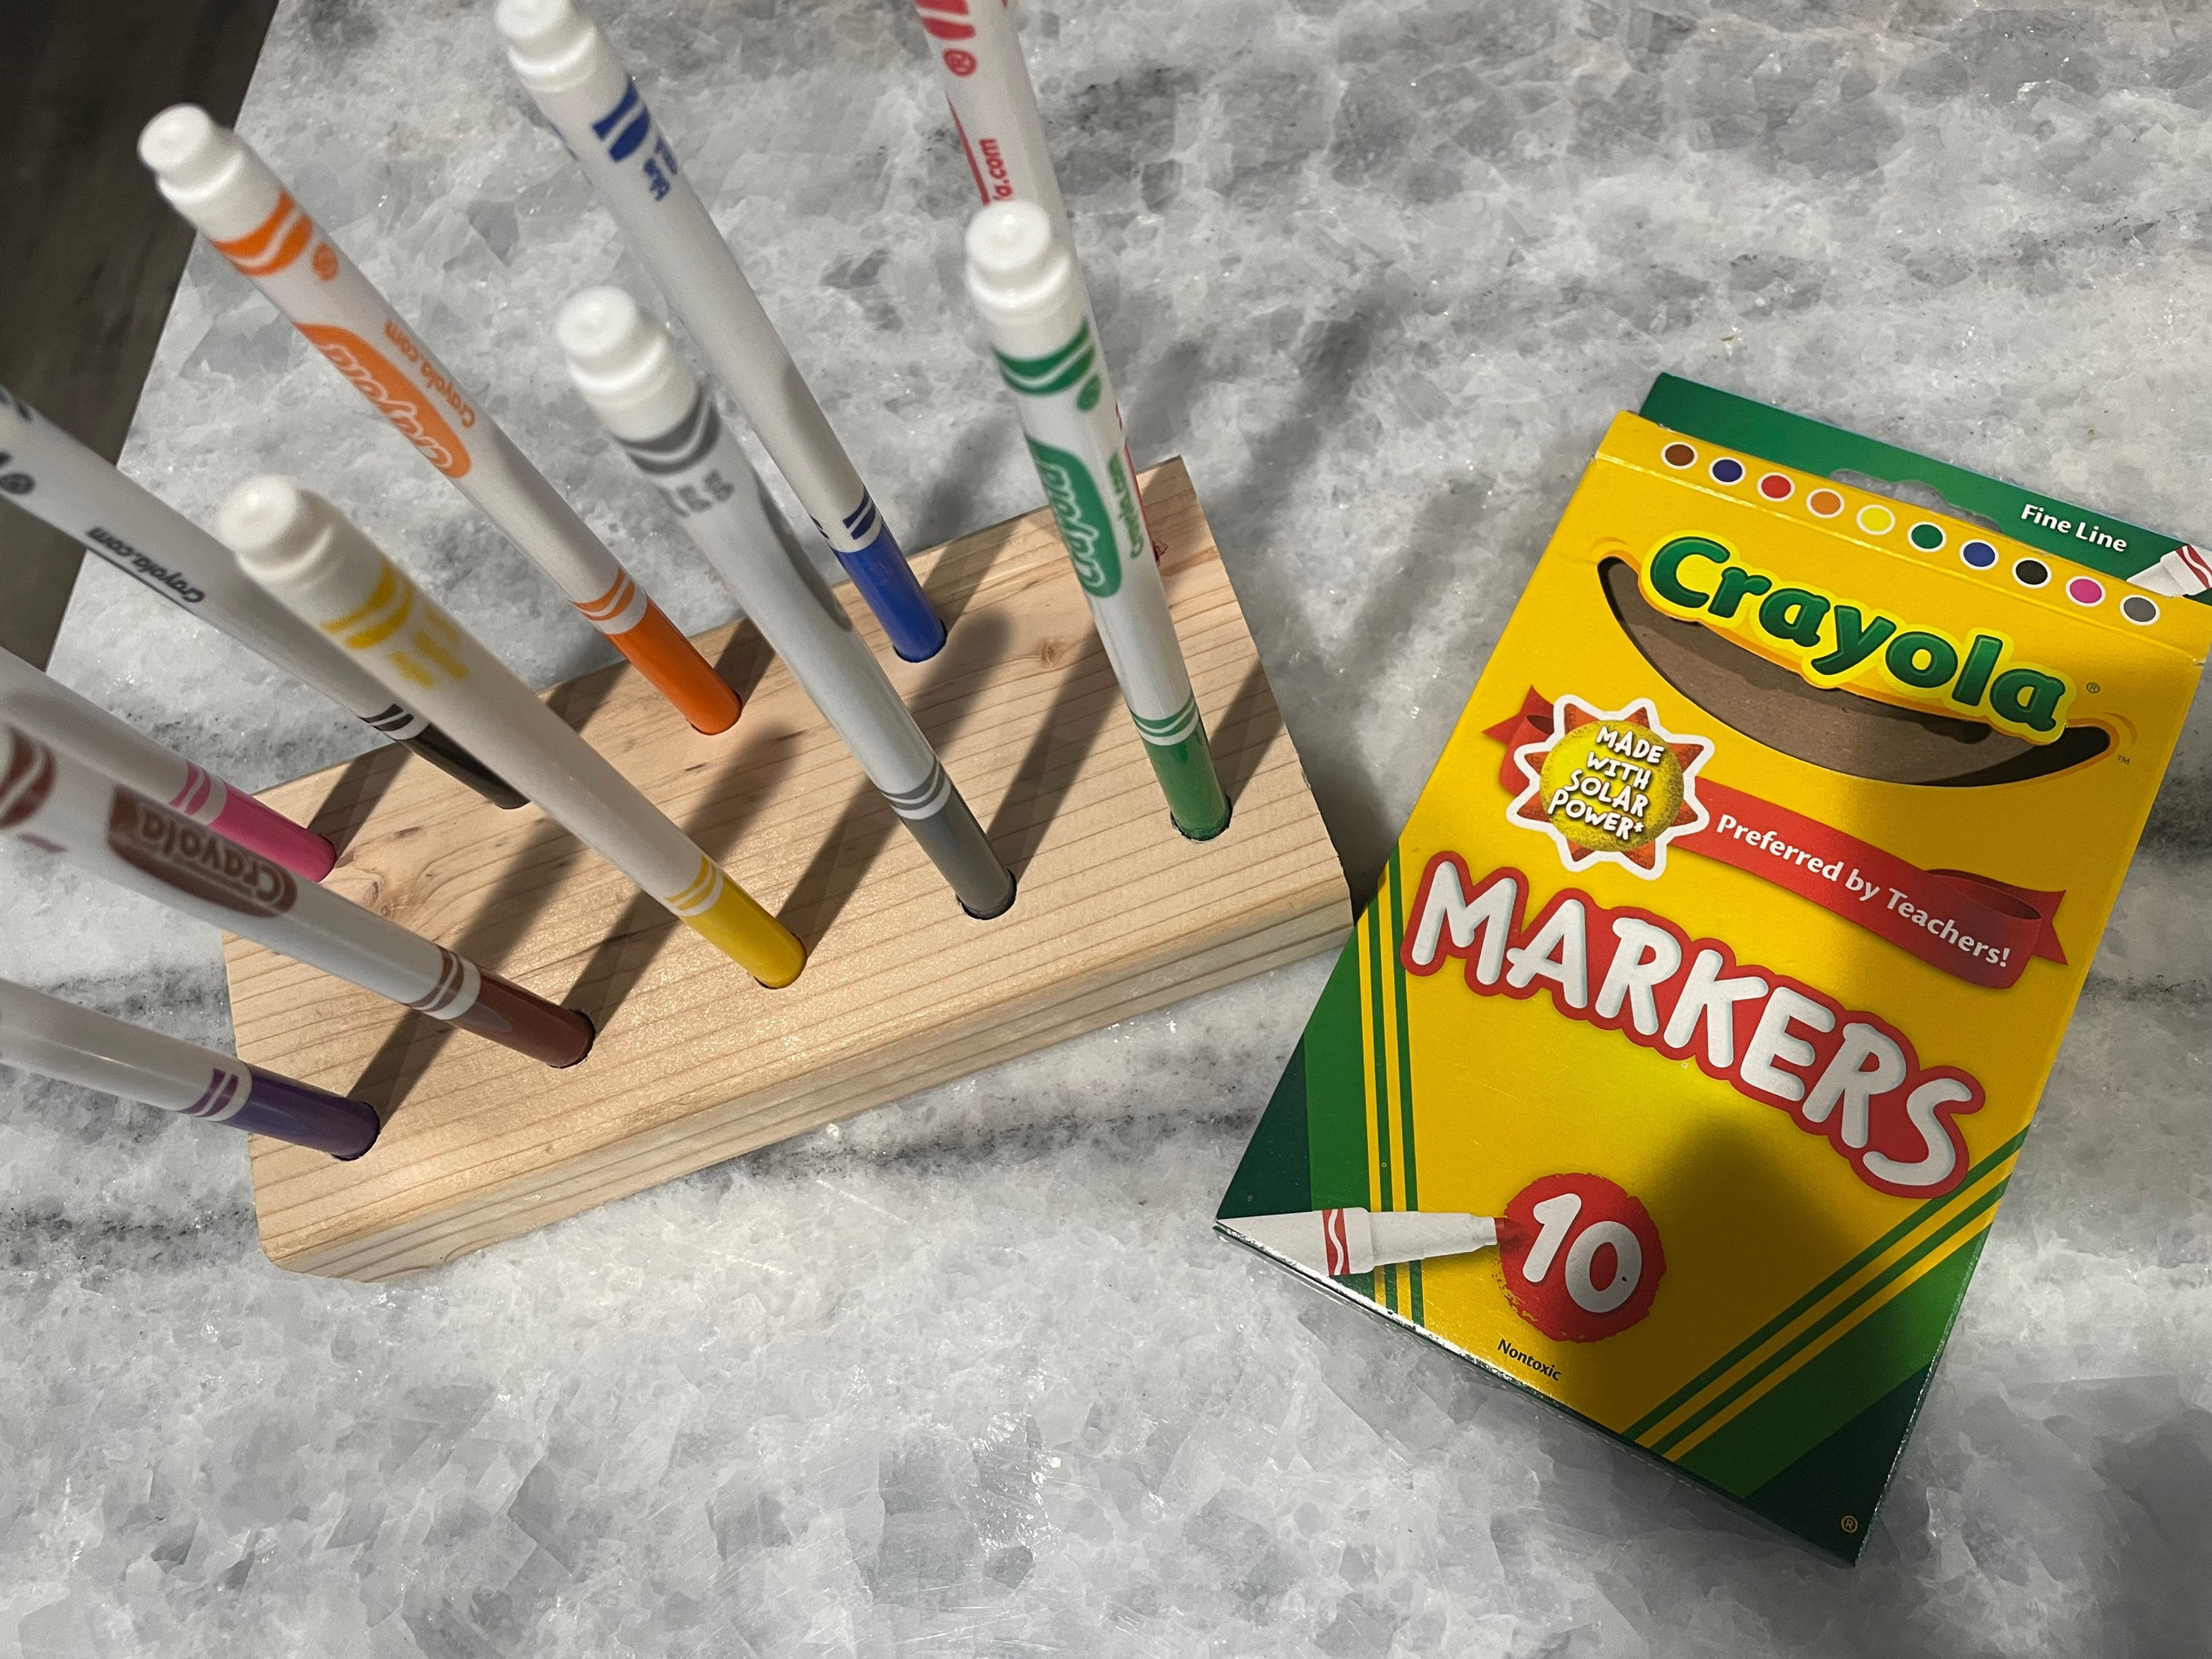 Marker holder (for skinny markers) / Marker Keeper / Crayola / Markers